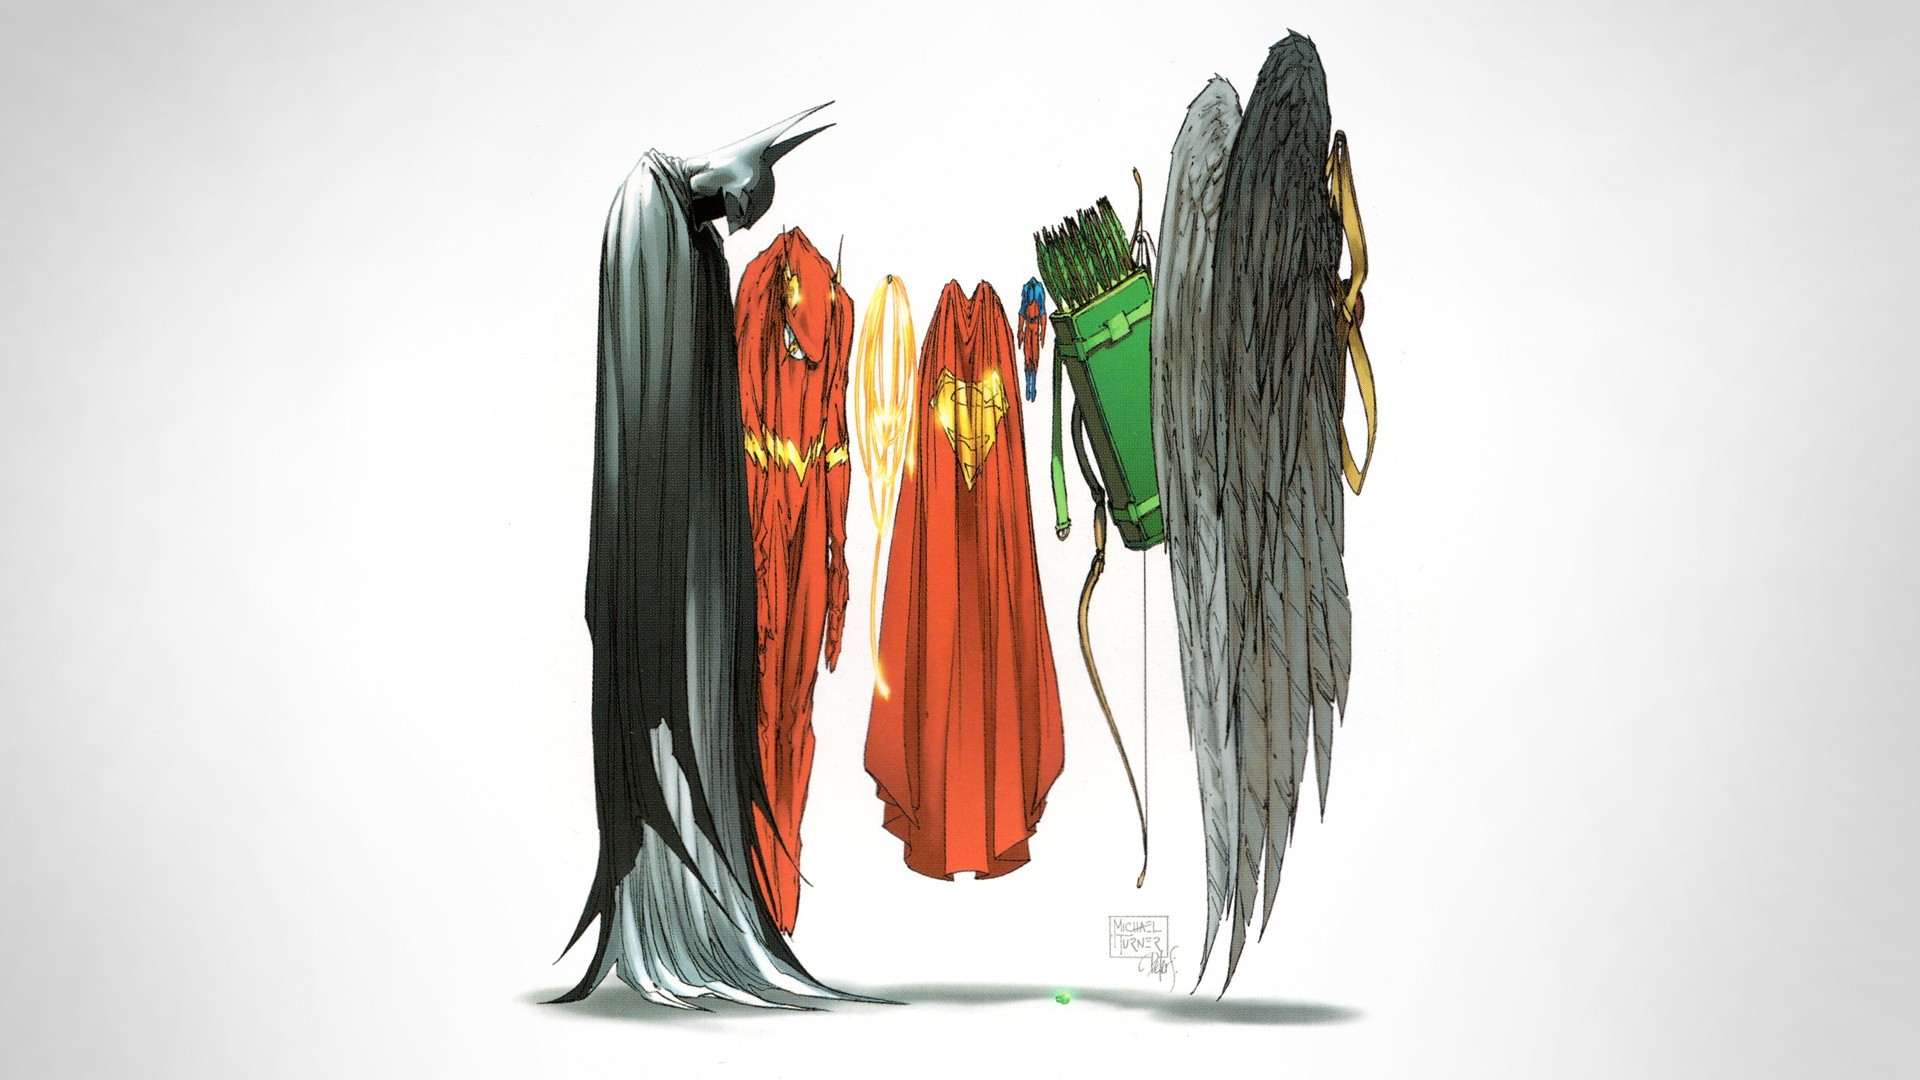 Wallpaper batman superhero cape dc ics the flash costumes superman clothing color textile outerwear x